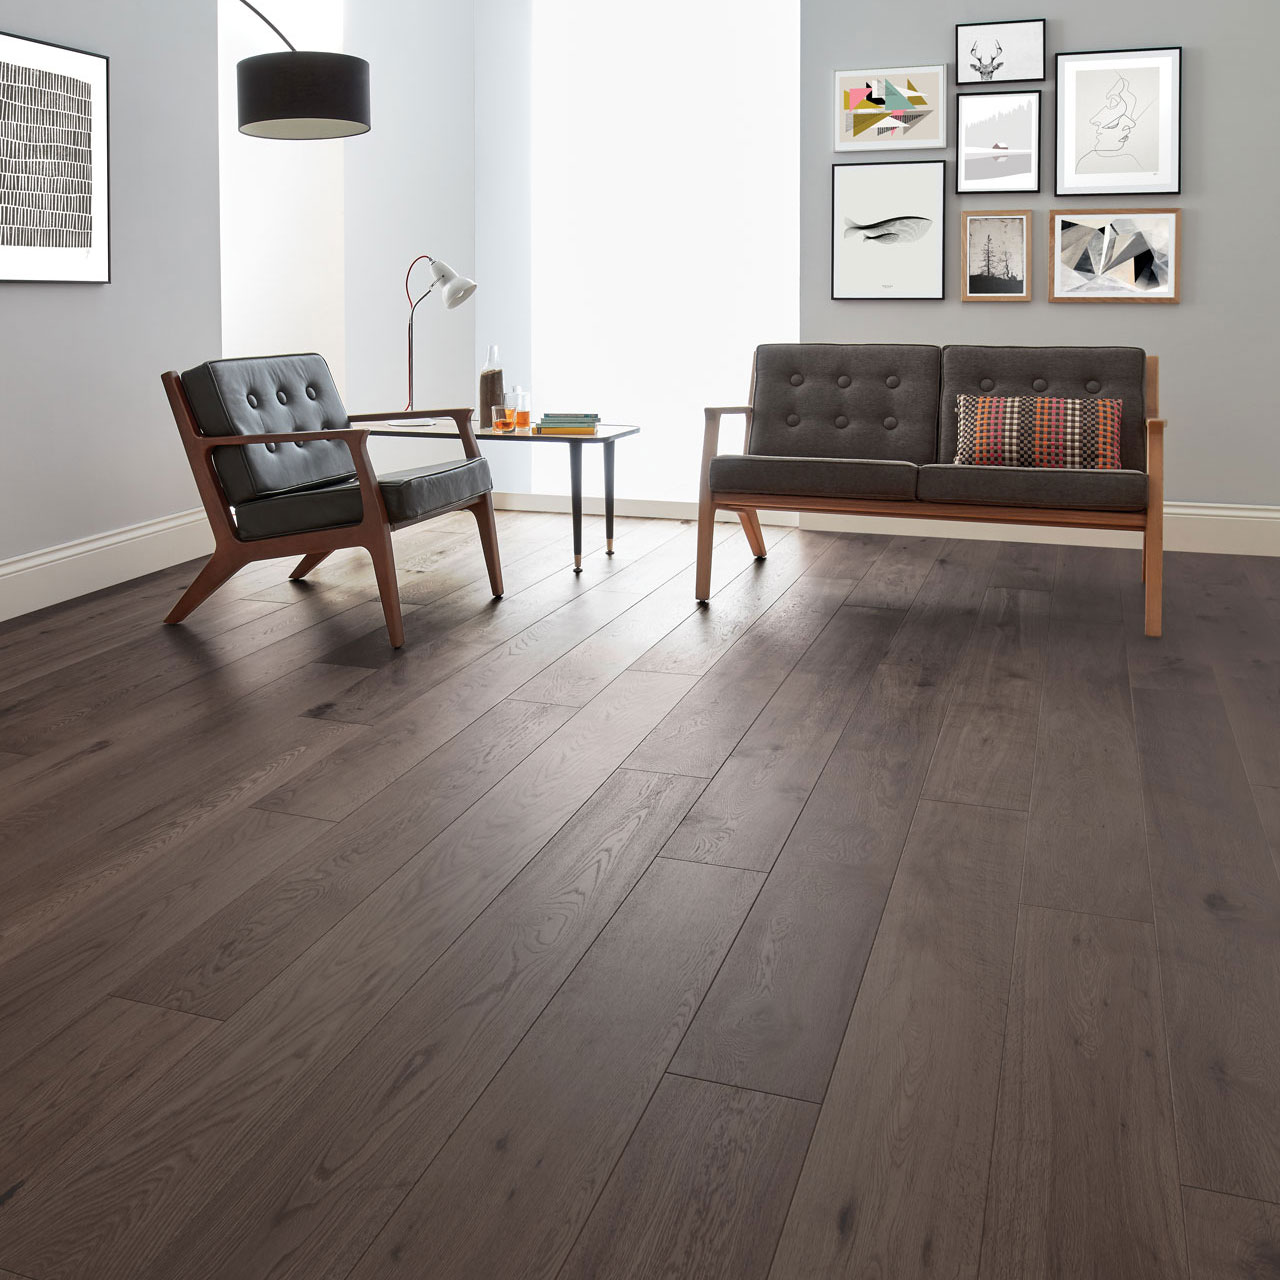 Dark Wood Floors Style Tips, Dark Wood Floor Living Room